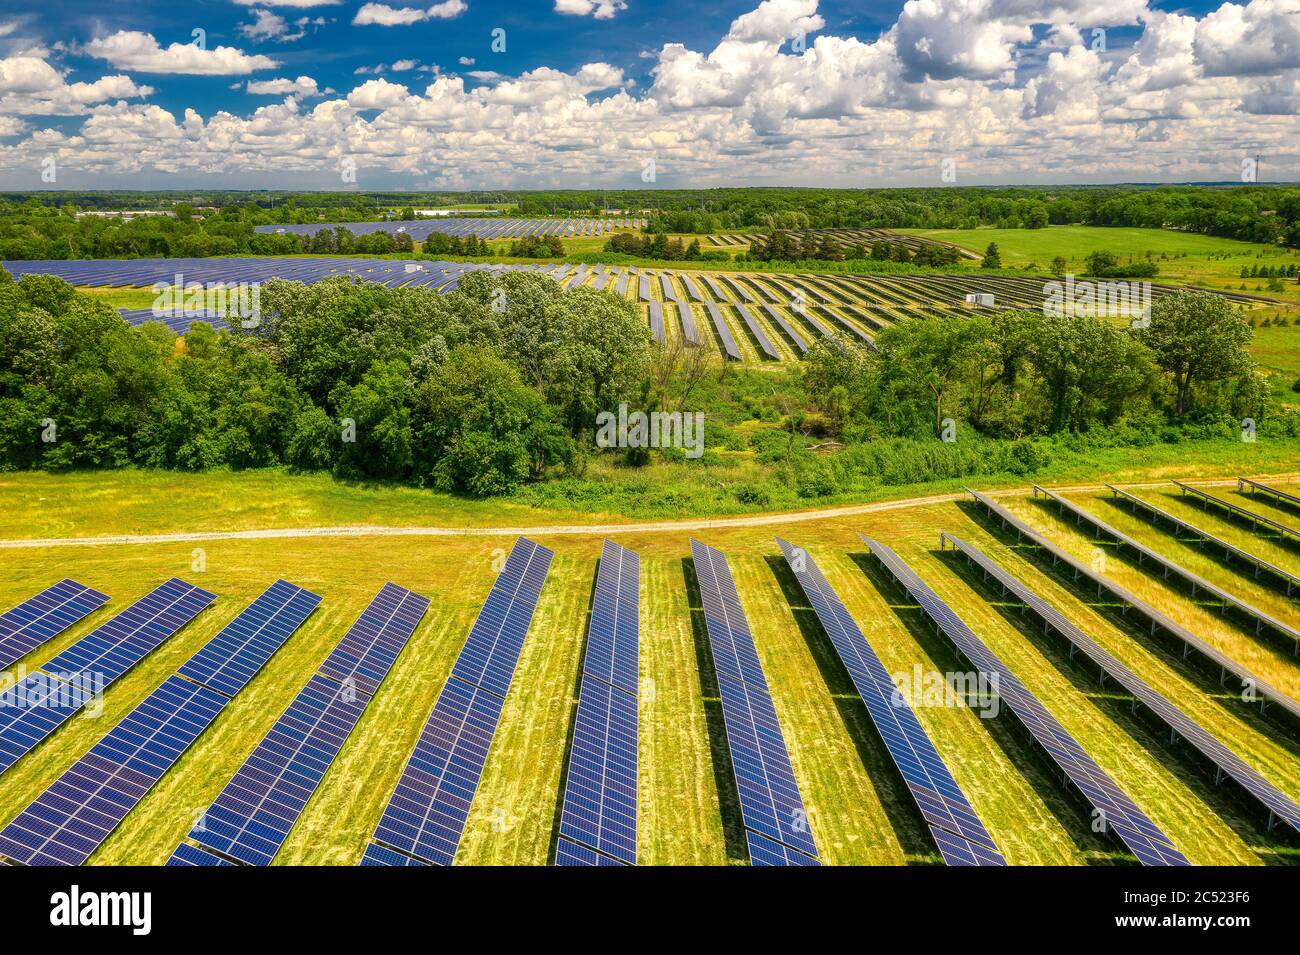 Ferme solaire - usine solaire Lapeer Turrill, DTE Energy, Lapeer, Michigan, États-Unis Banque D'Images